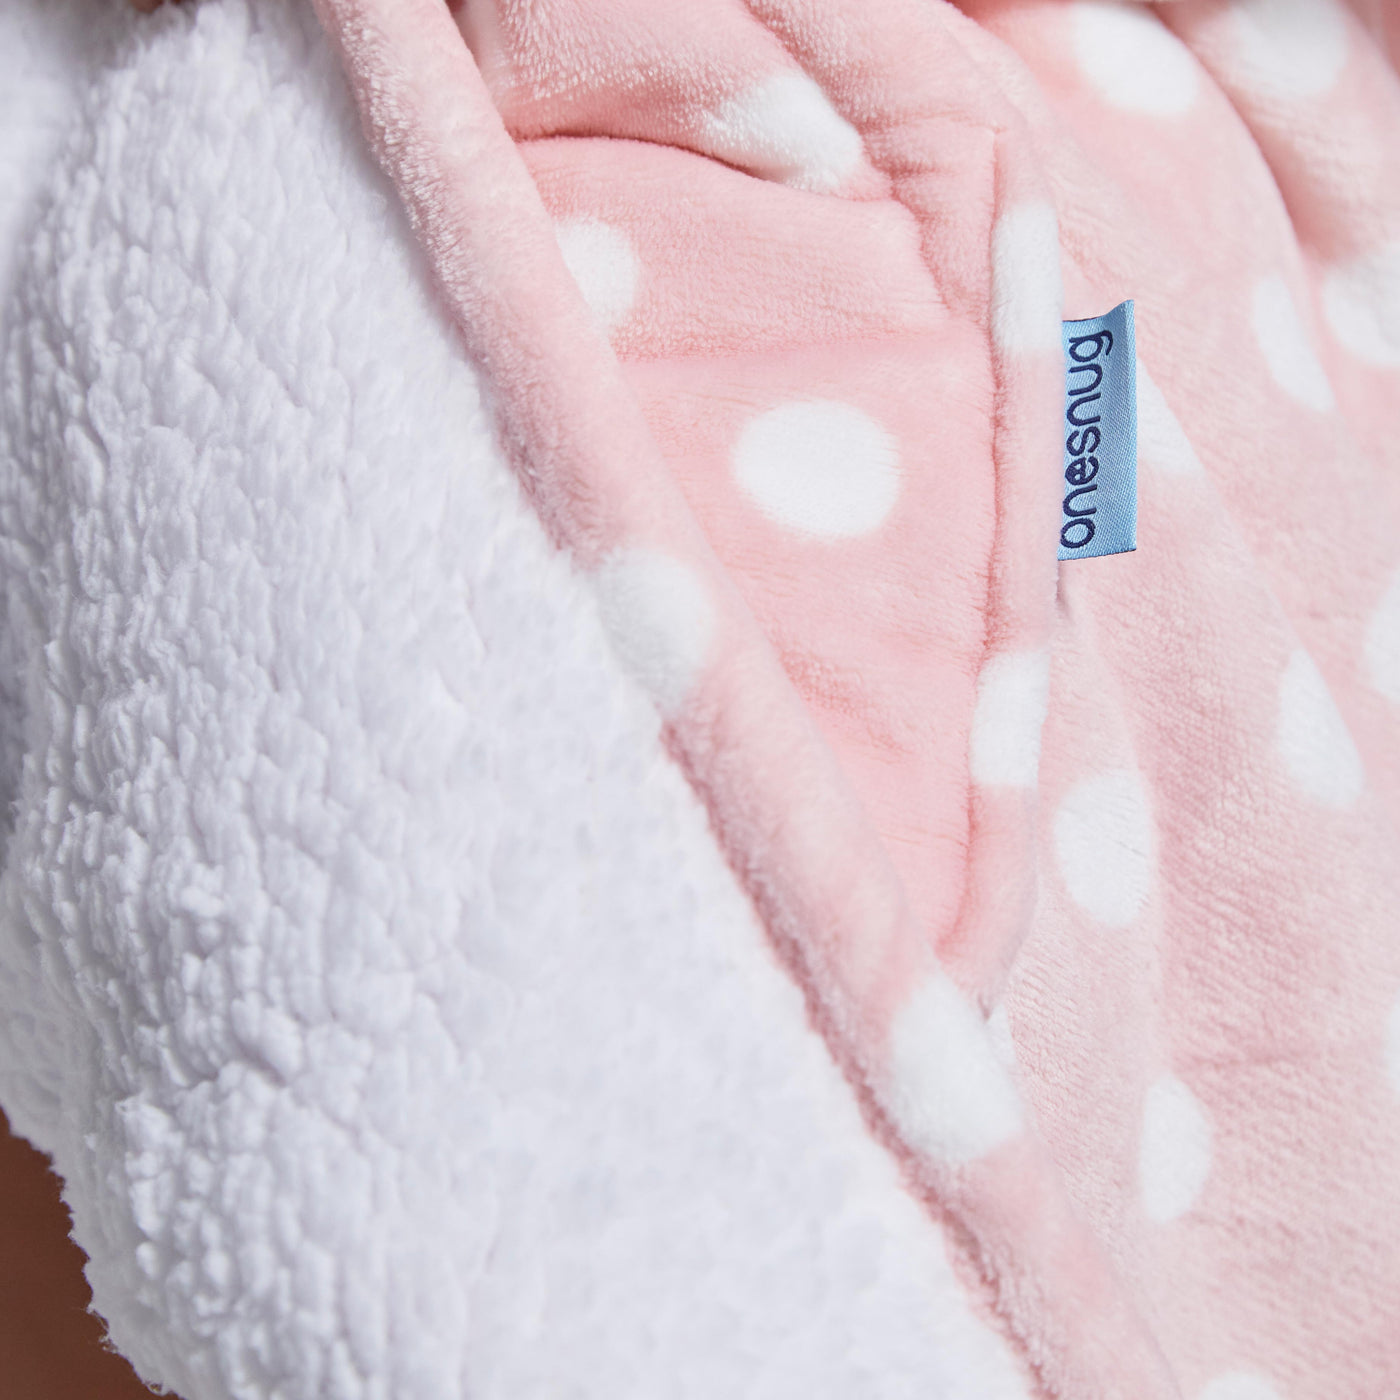 Hoodie Blanket - Pink Polka Dot